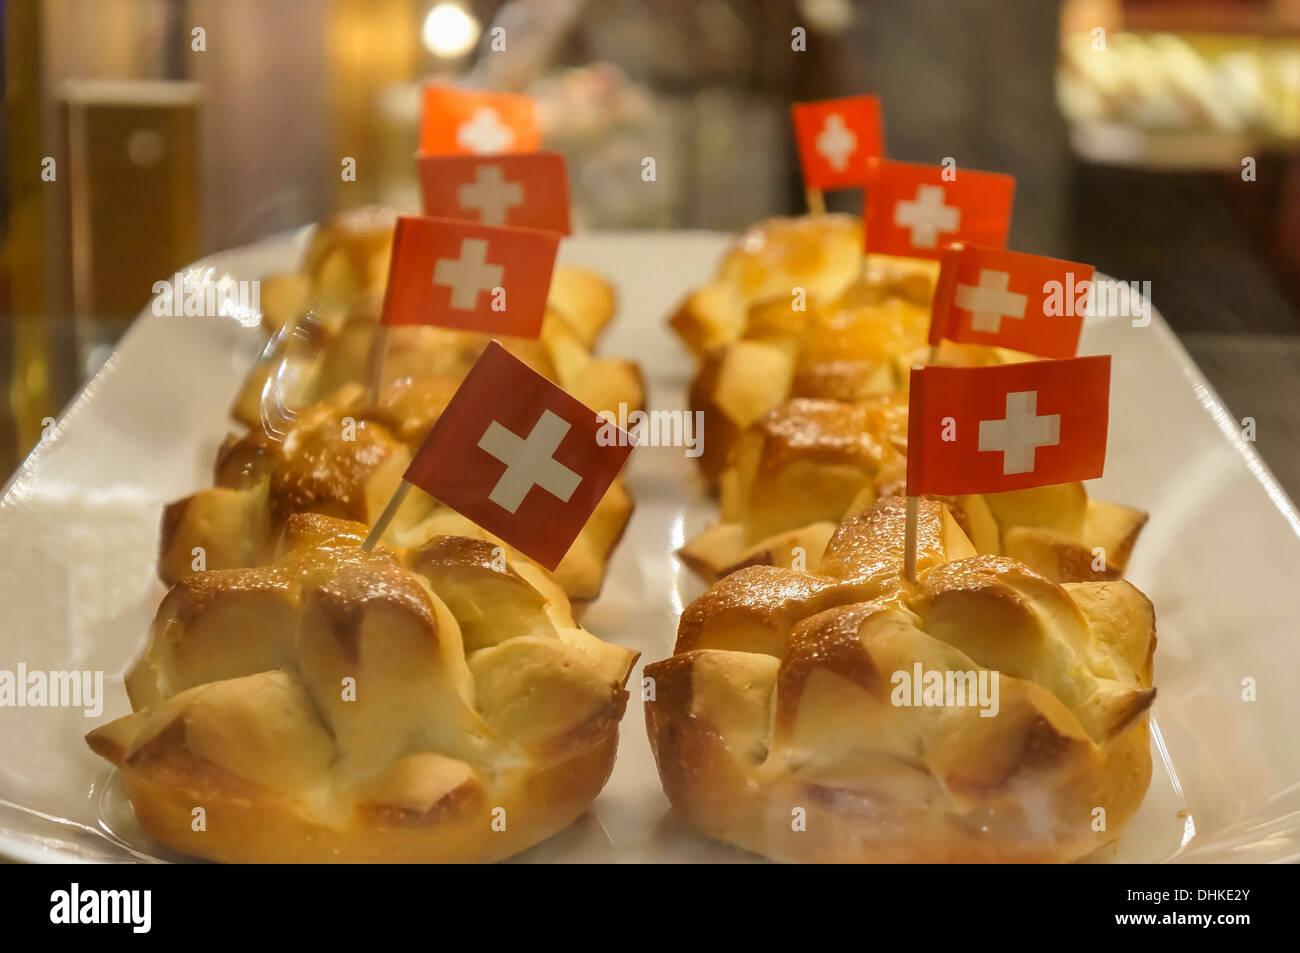 Gâteau avec petite suisse flagg, 1er août Fête nationale, Zurich, Suisse Banque D'Images